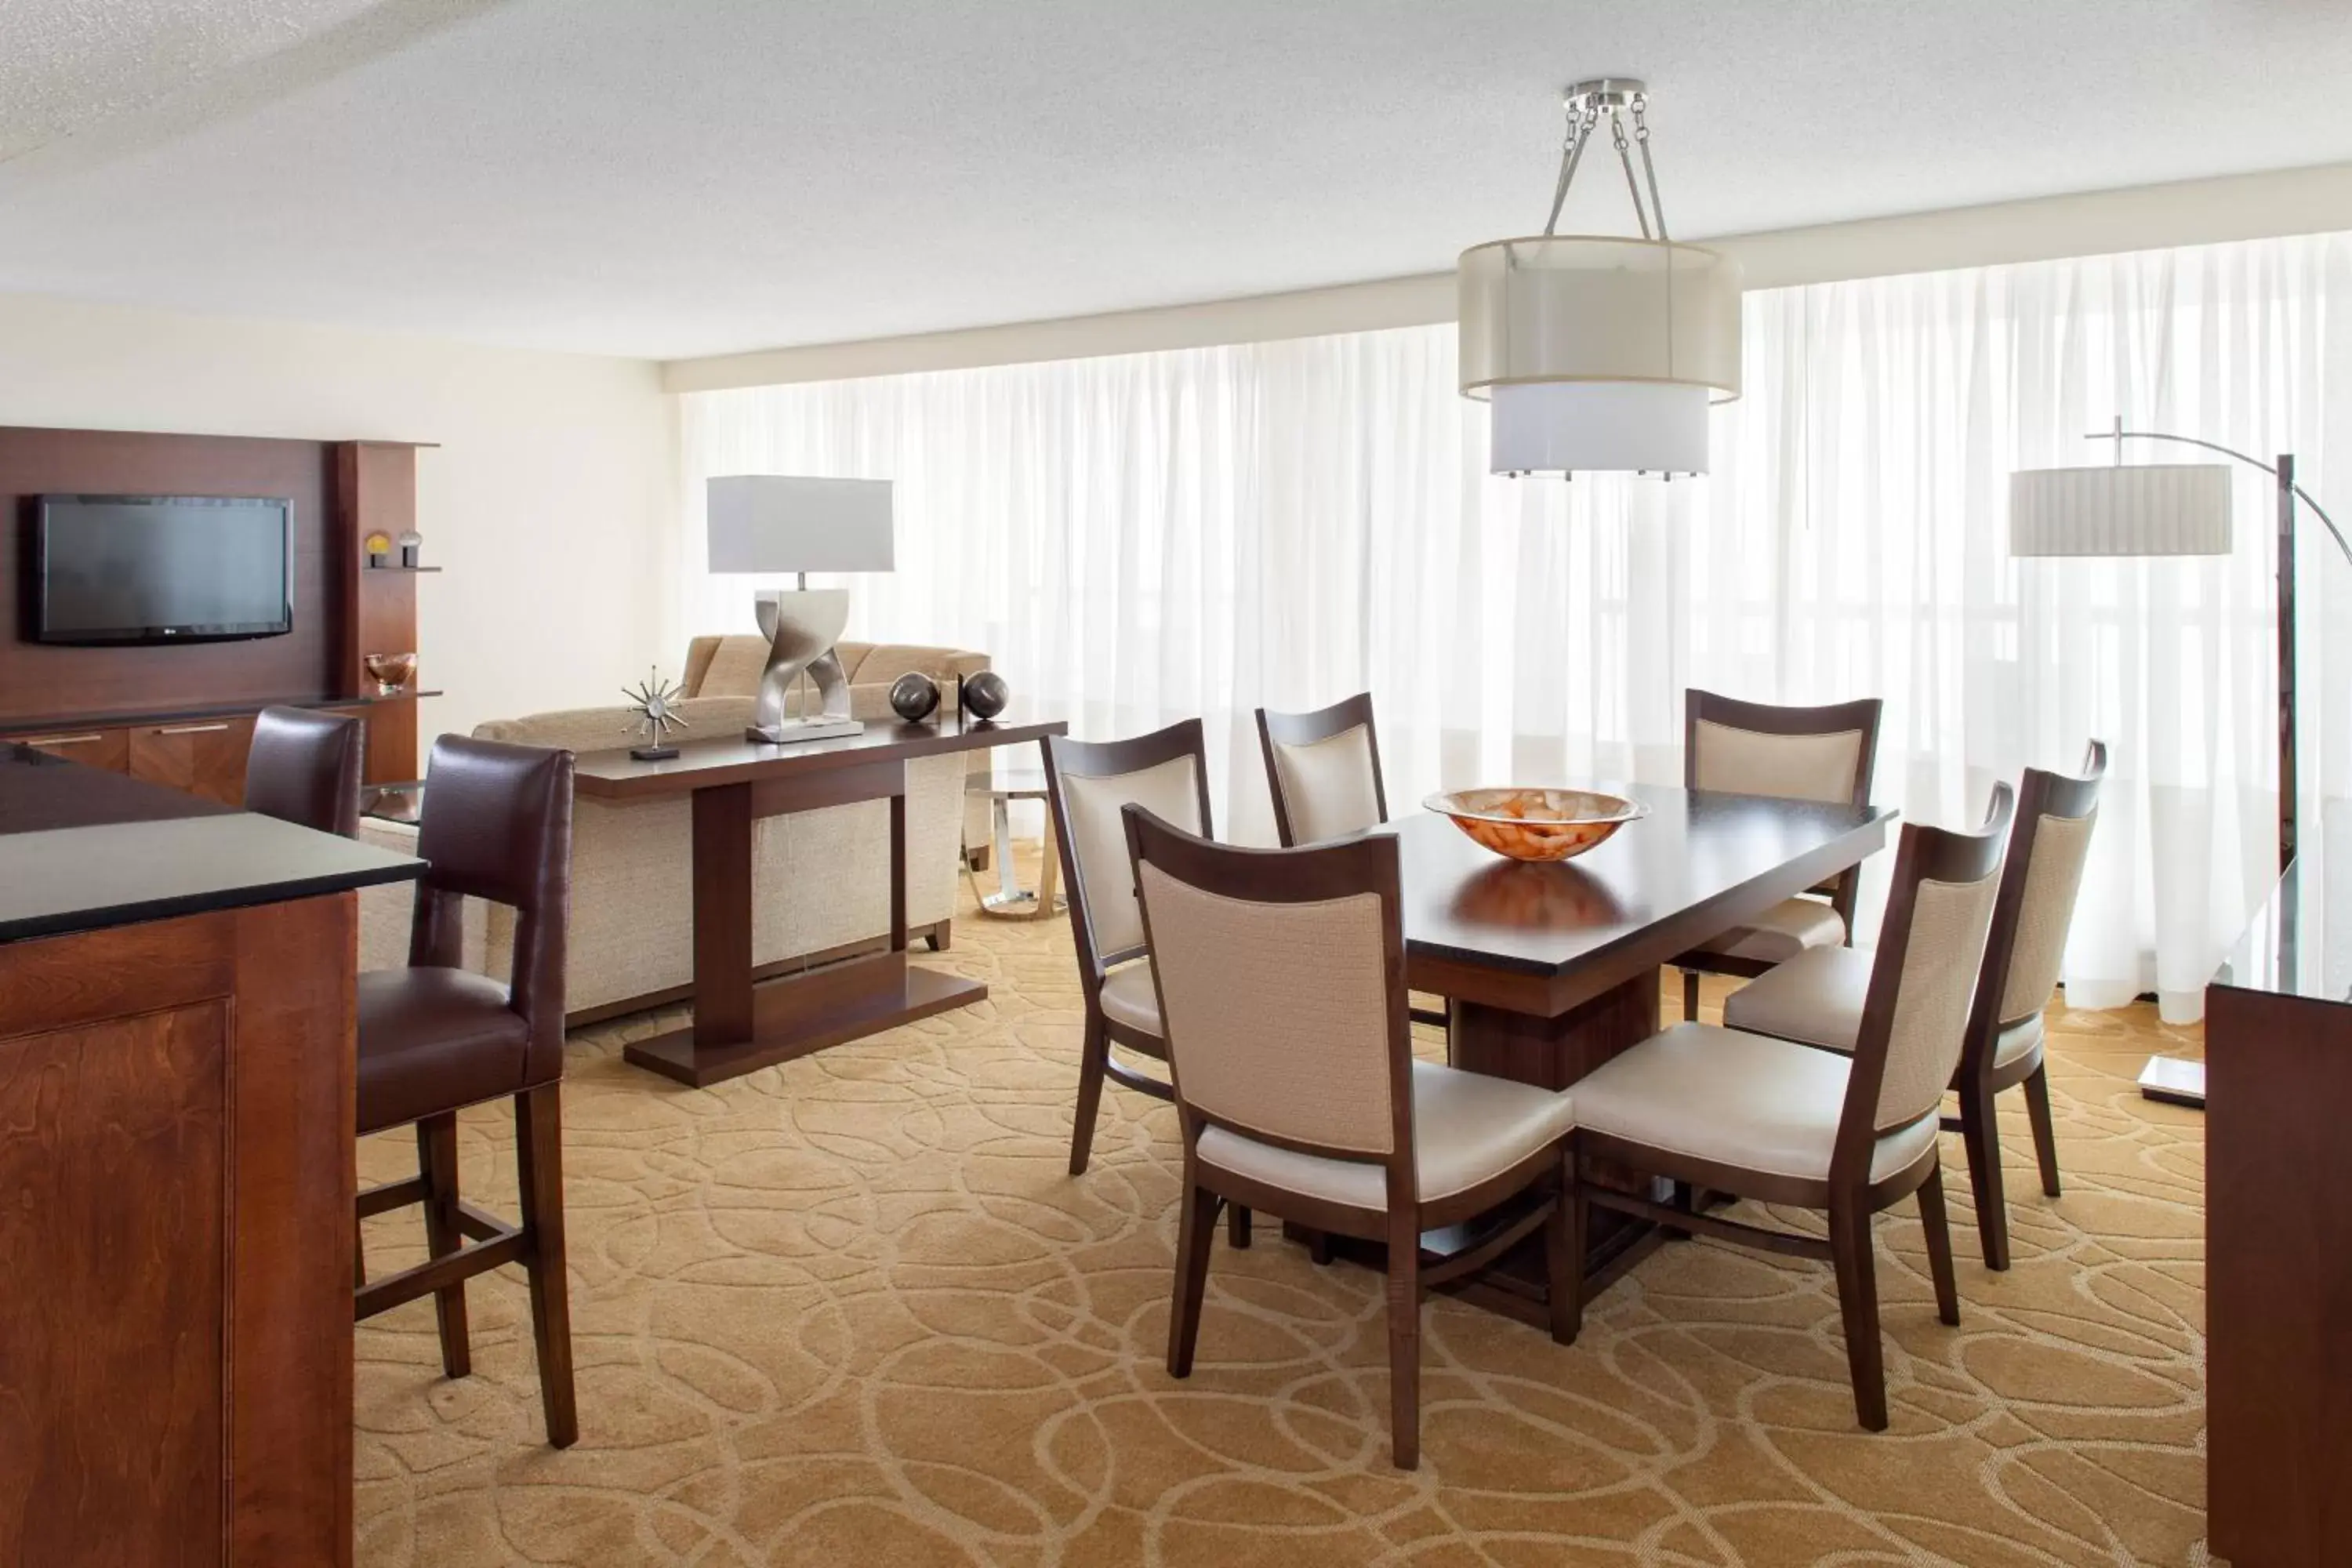 Bedroom, Dining Area in Marriott Hilton Head Resort & Spa